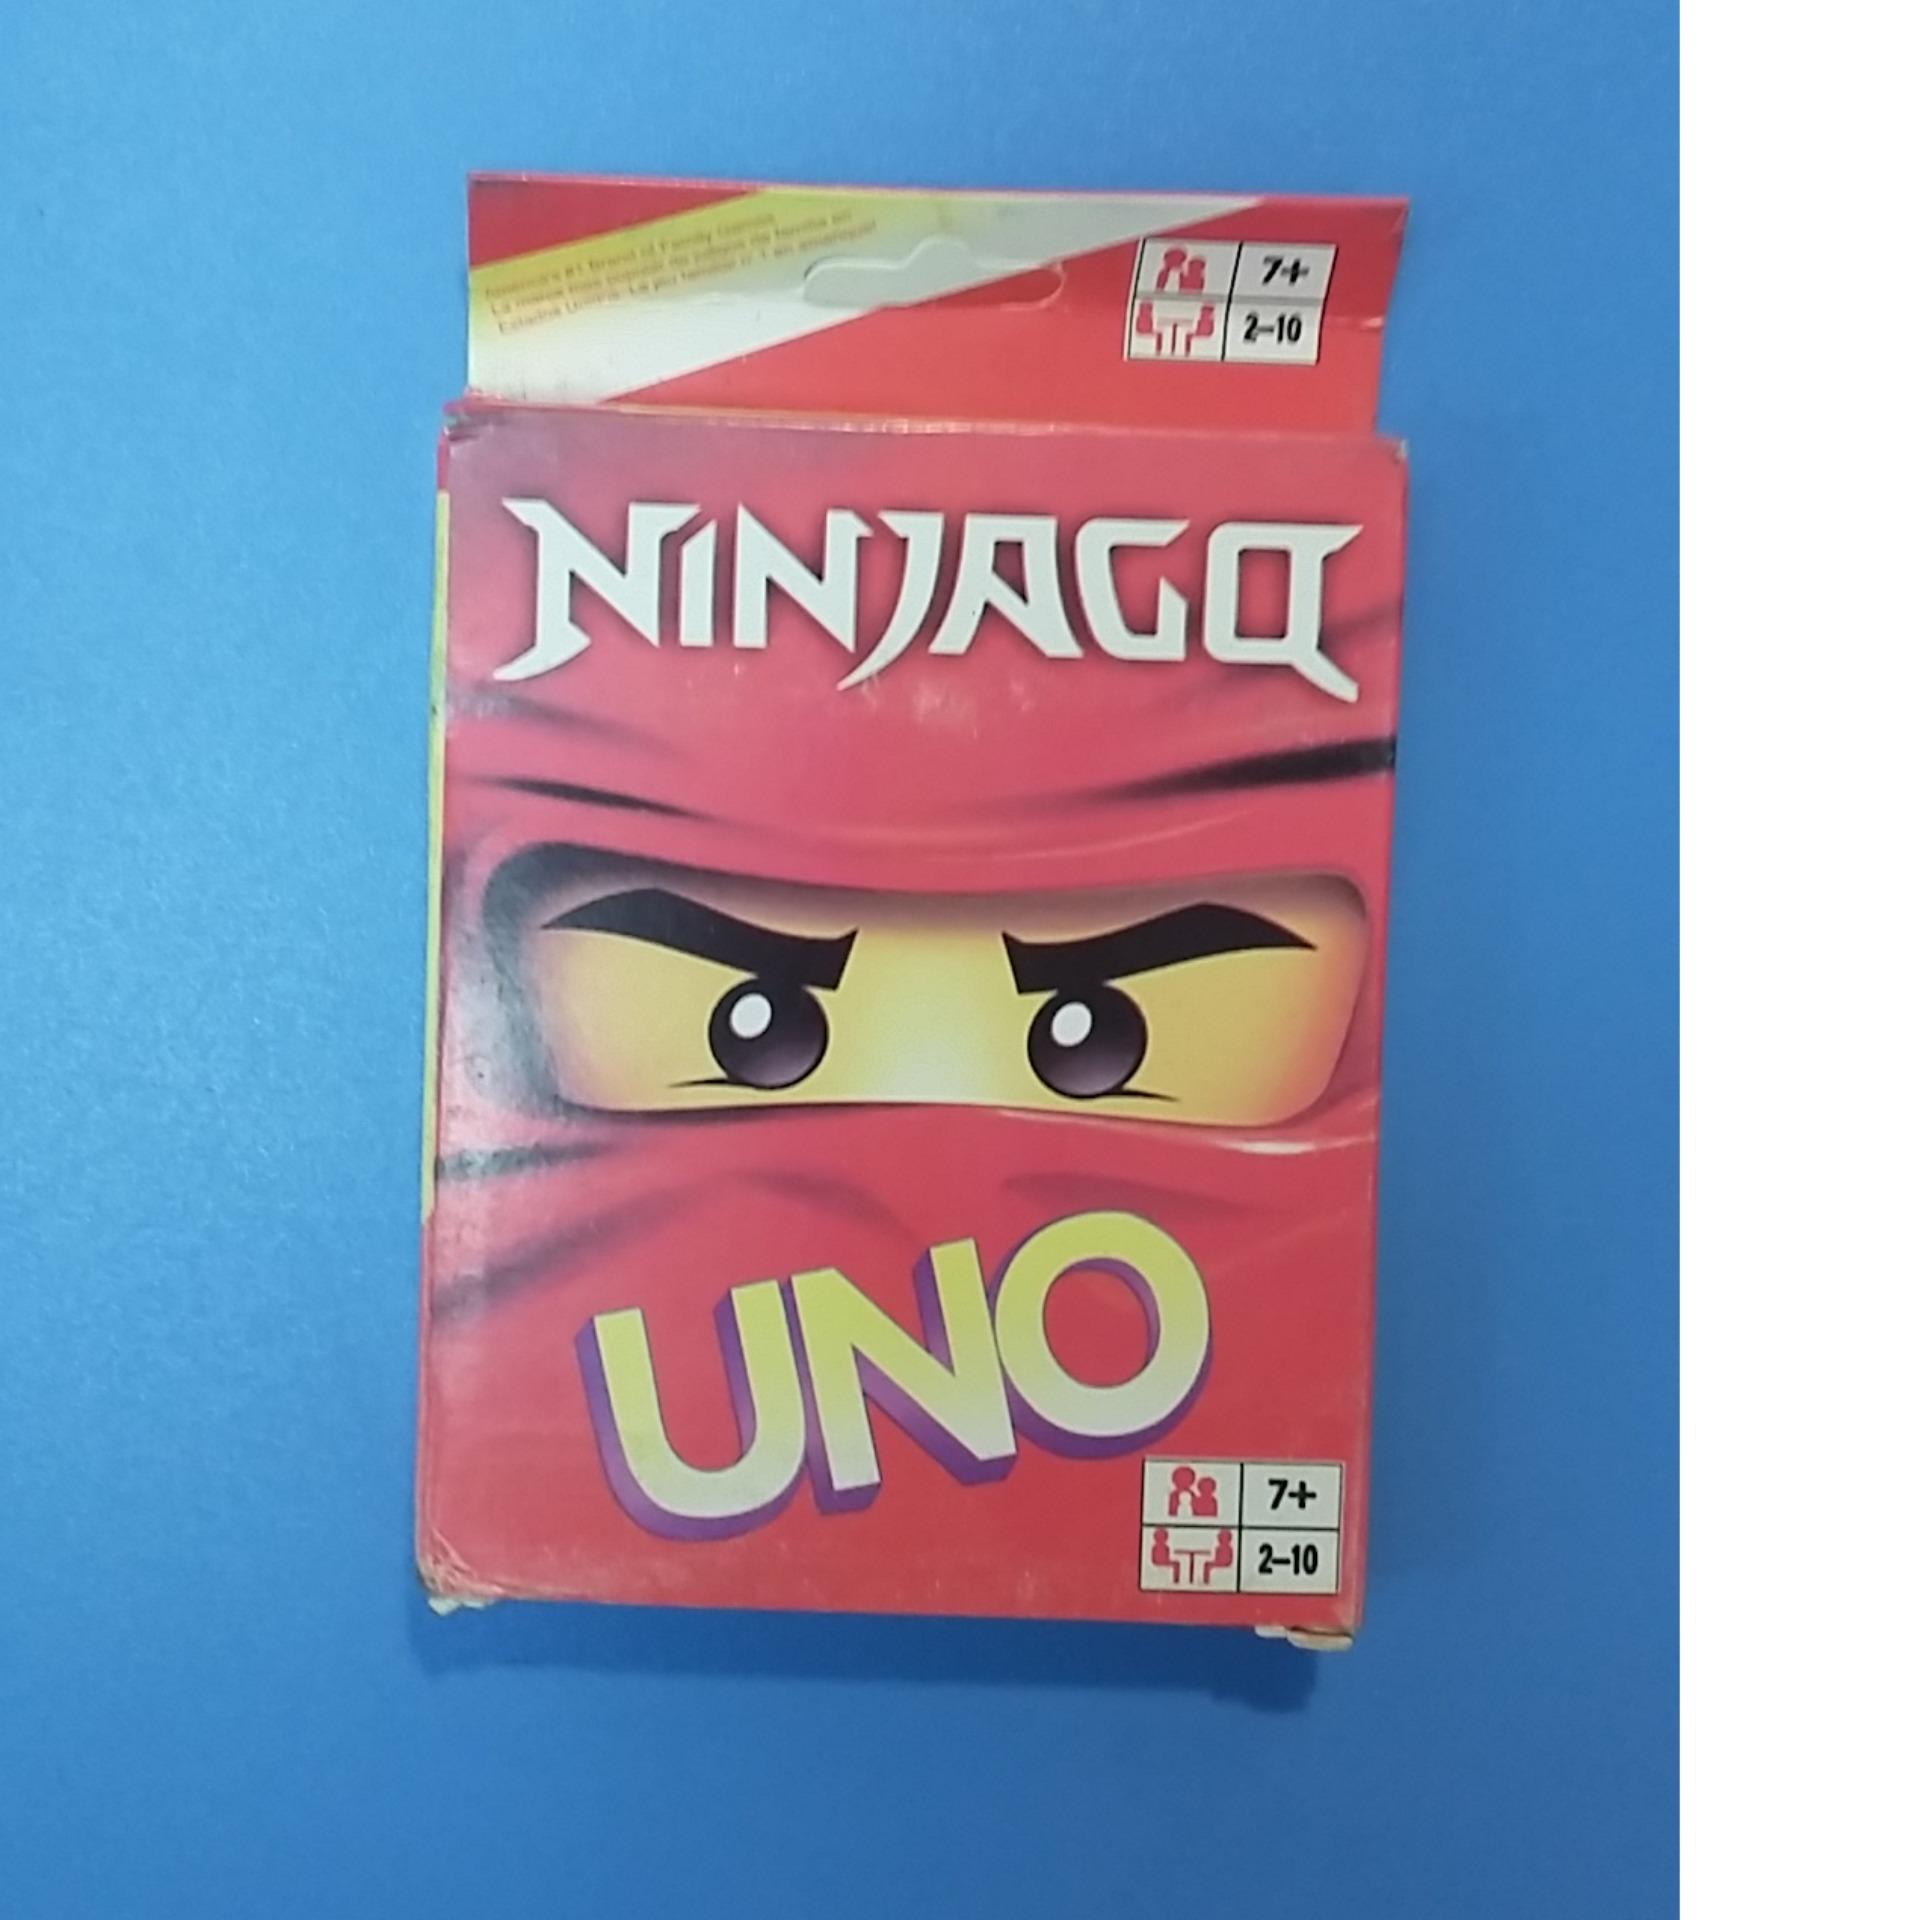 Ninjago UNO: Với đồ họa rực rỡ và các nhân vật yêu thích từ Ninjago, trận đấu Uno này sẽ cho bạn một trải nghiệm gần gũi với thế giới của các chiến binh ninja. Hãy xem hình ảnh liên quan để thấy cuộc chiến bài tay này!